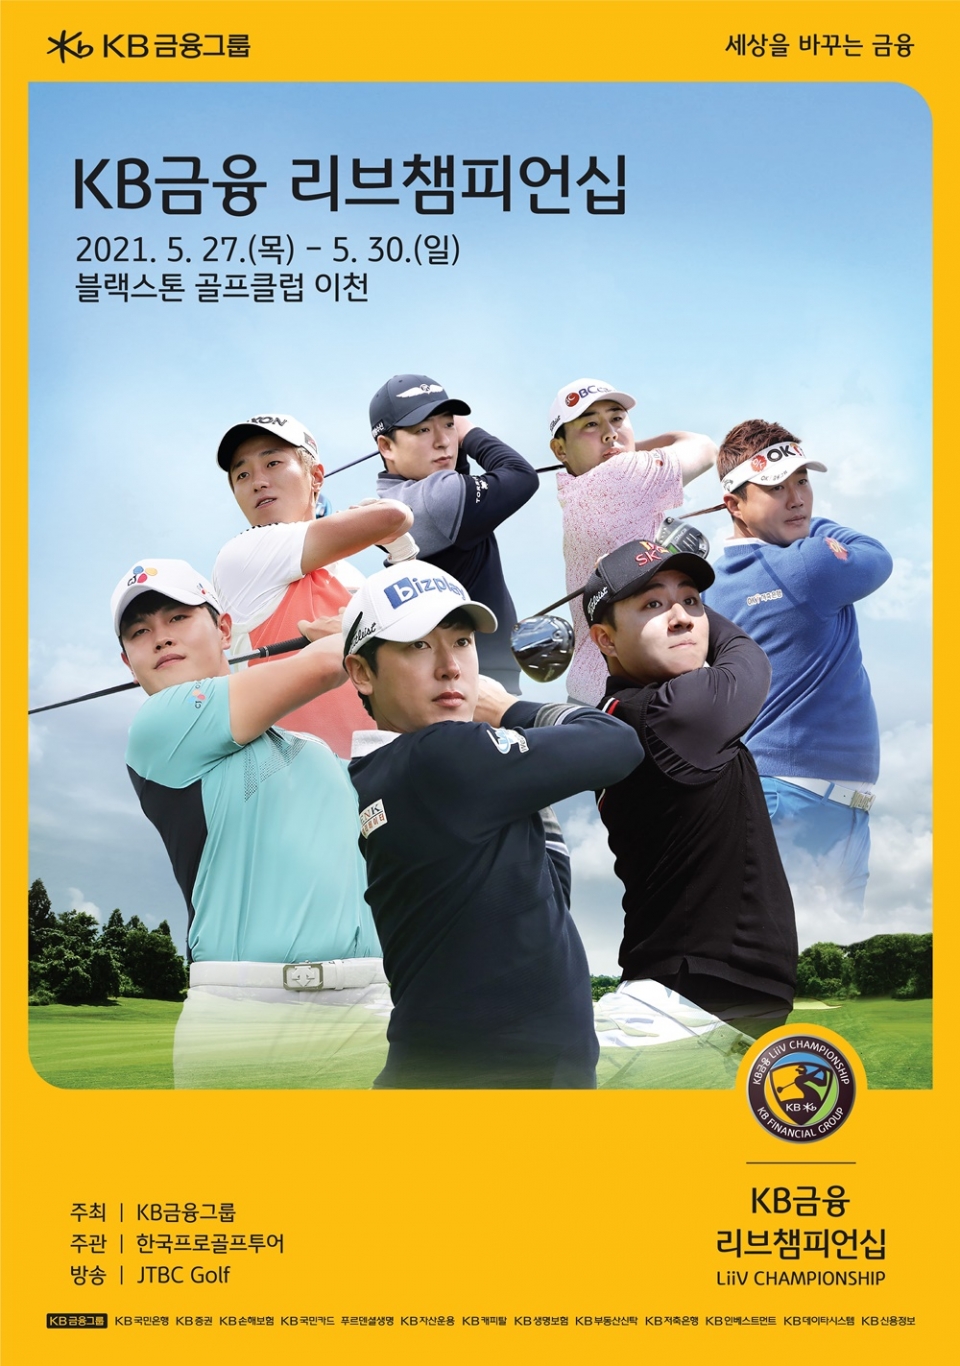 오는 27~30일 진행되는 KB금융 리브챔피언십 포스터. (자료=KB금융)